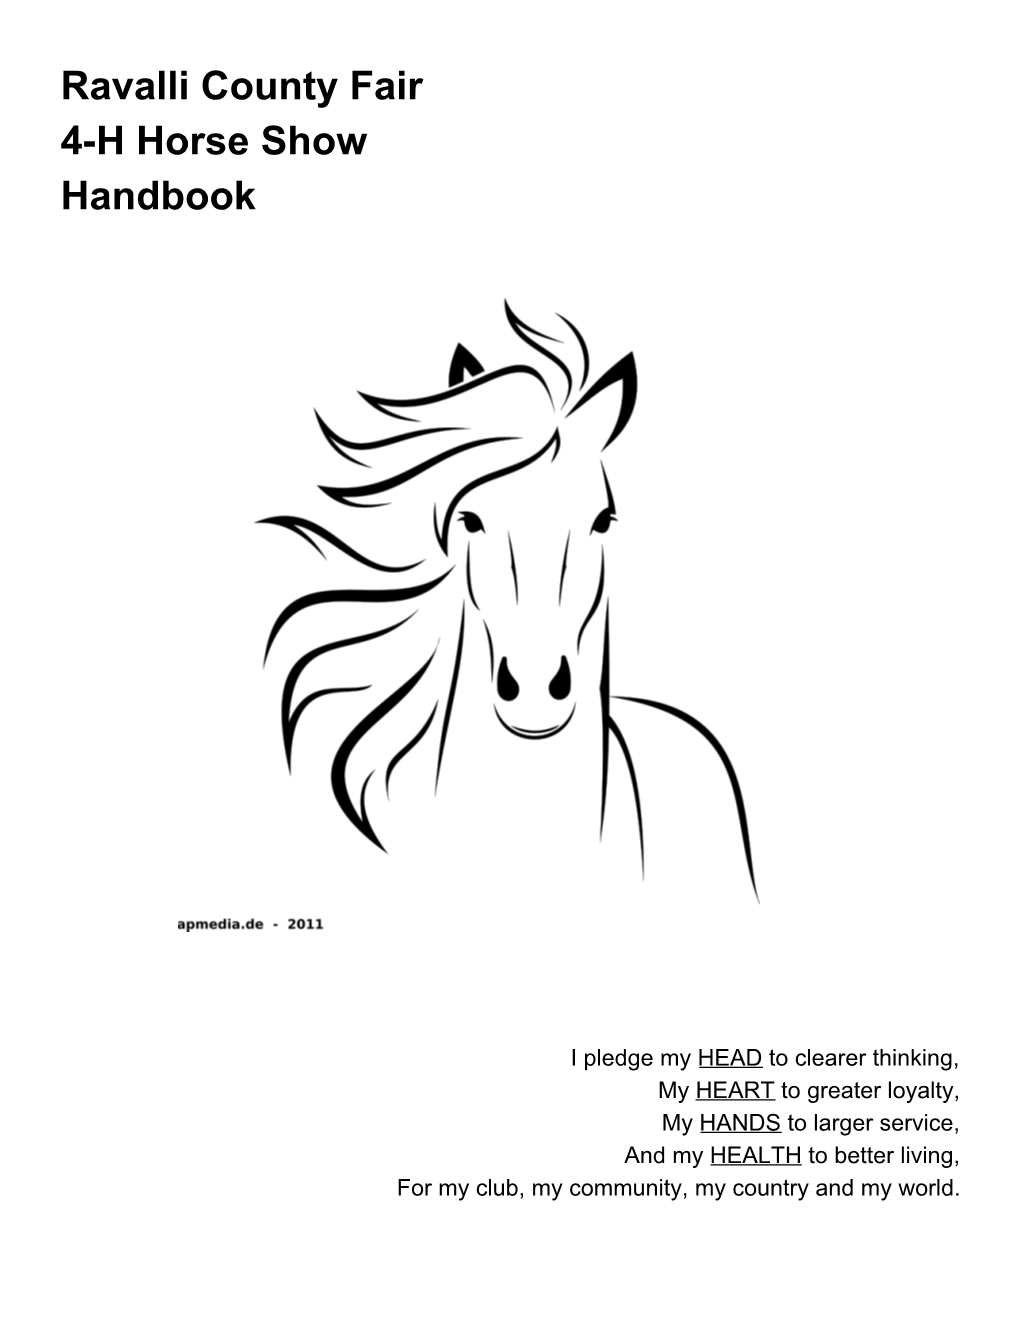 Ravalli County Fair 4-H Horse Show Handbook